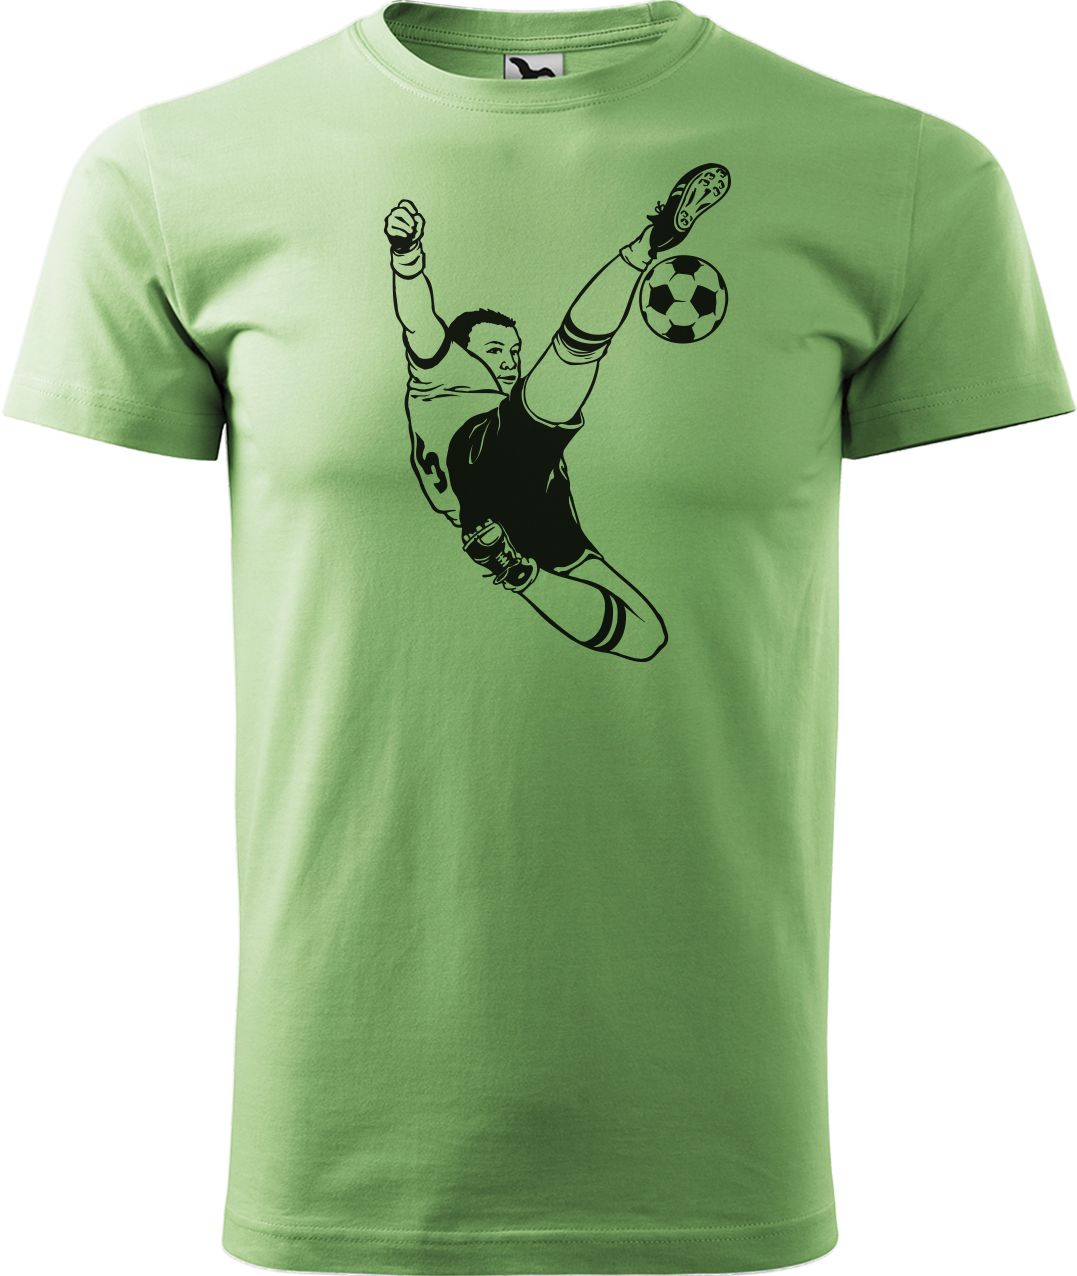 Tričko pro fotbalistu - Fotbalista s míčem Velikost: L, Barva: Trávově zelená (39)